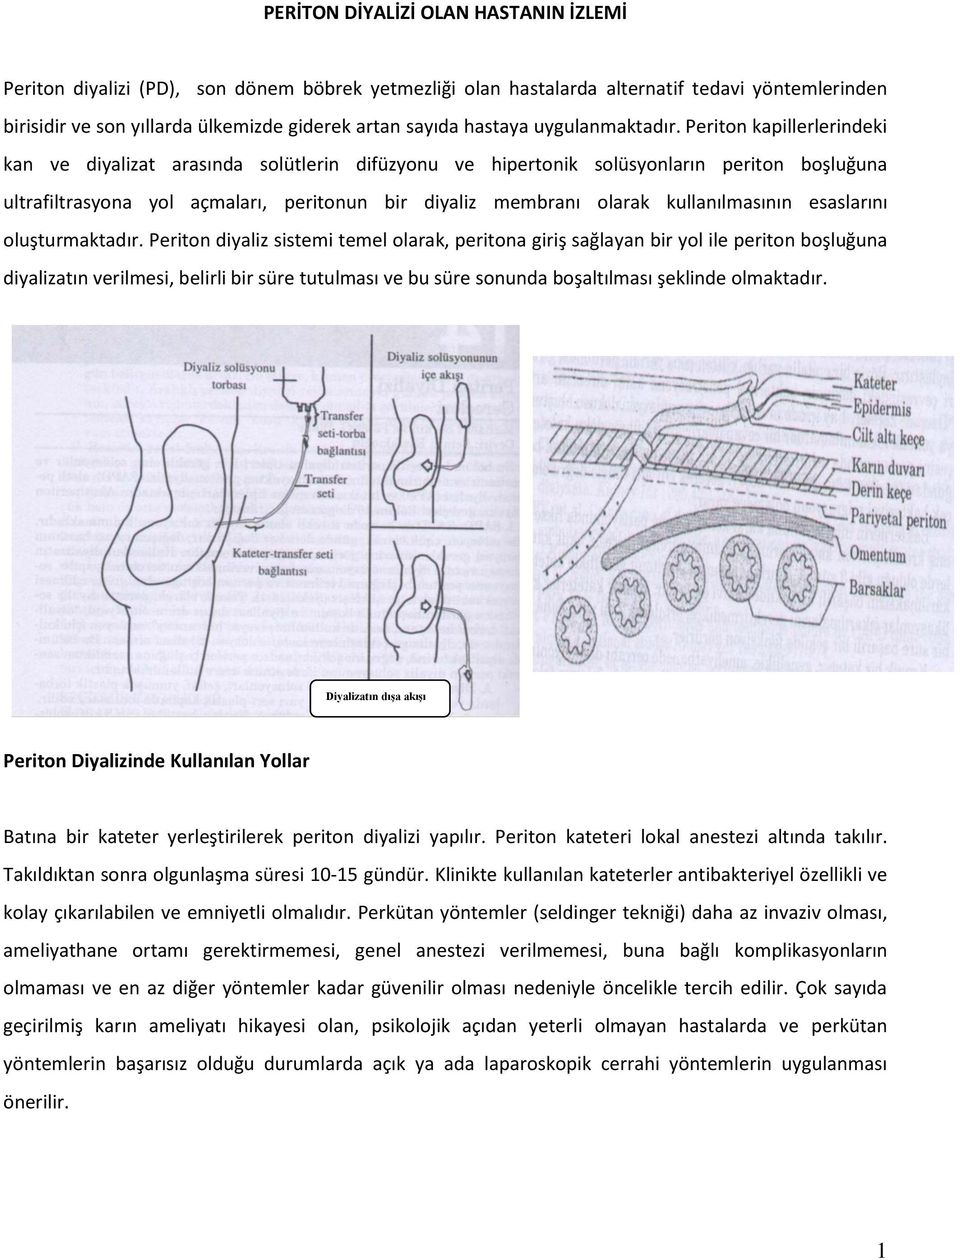 Periton kapillerlerindeki kan ve diyalizat arasında solütlerin difüzyonu ve hipertonik solüsyonların periton boşluğuna ultrafiltrasyona yol açmaları, peritonun bir diyaliz membranı olarak